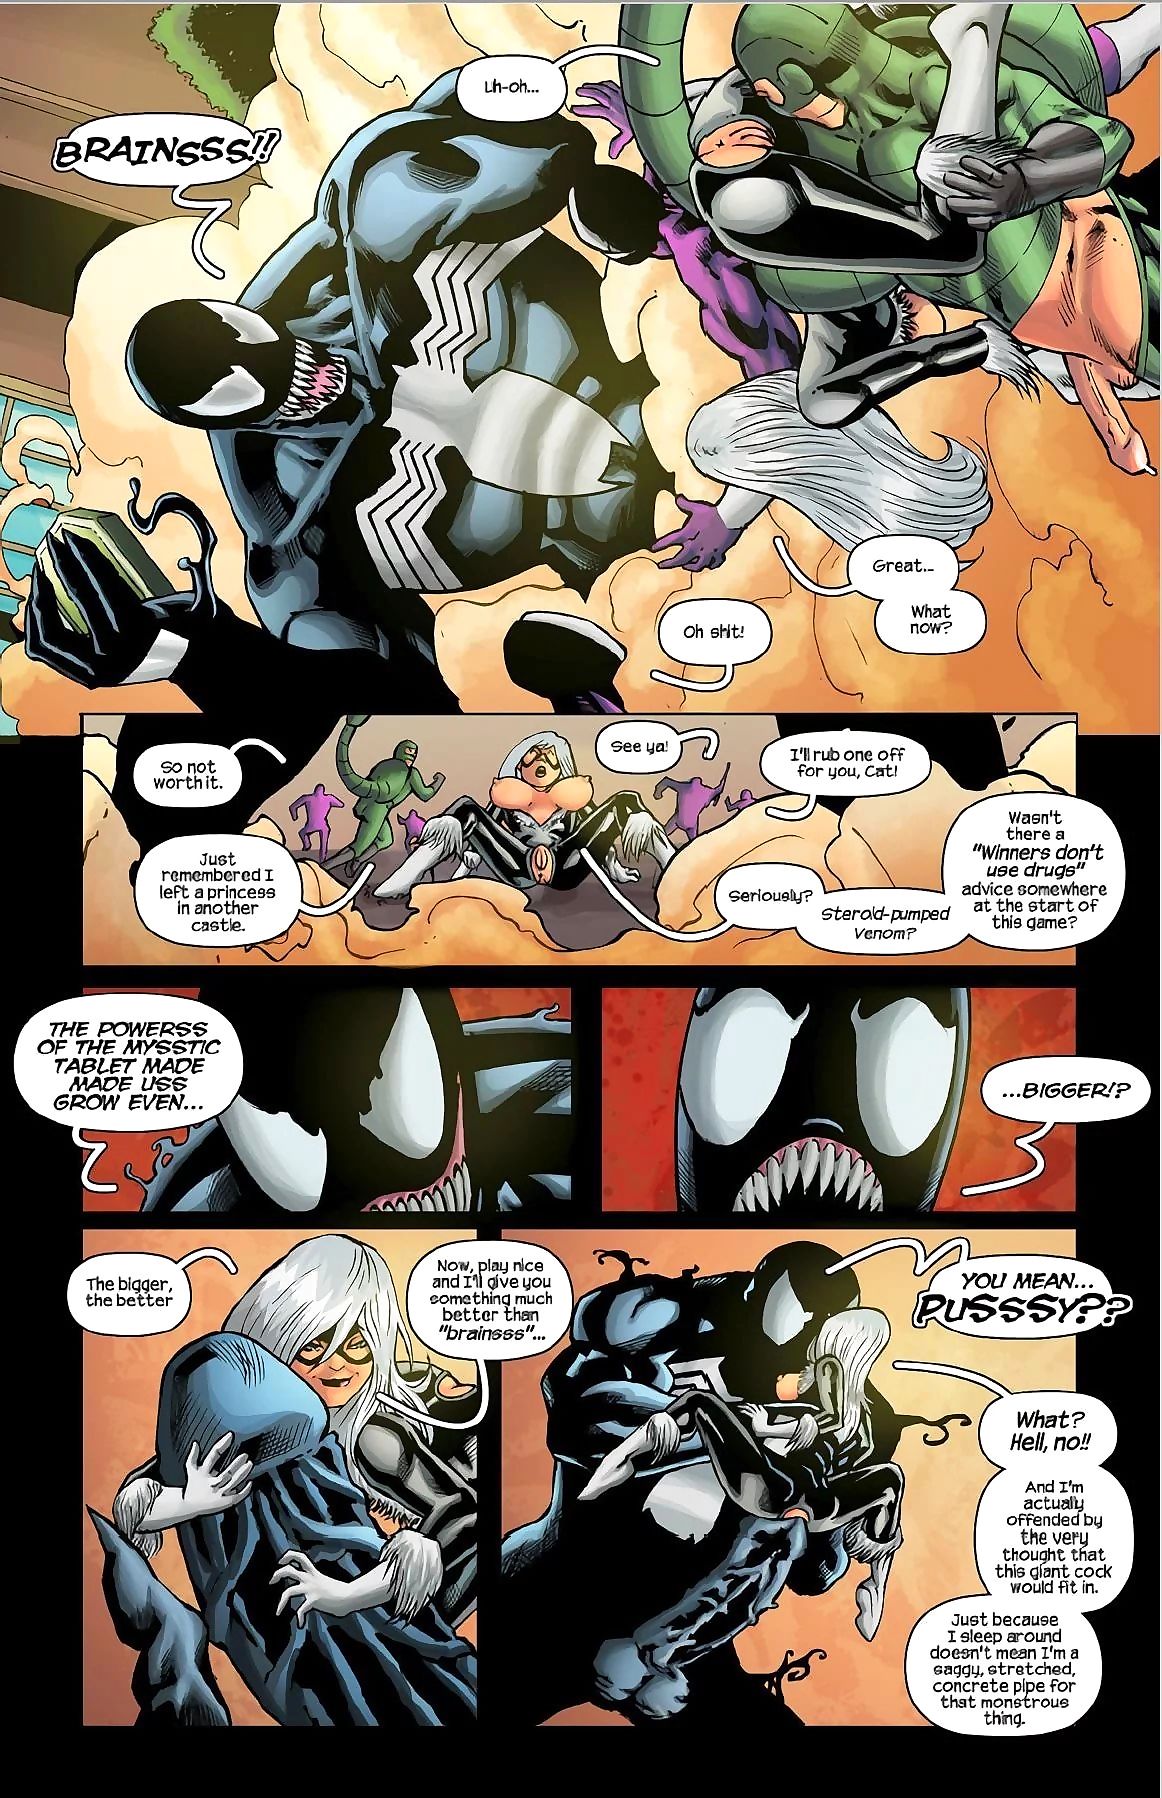 特雷西 领角 spiderman, 的 ’91 街 游戏 page 1